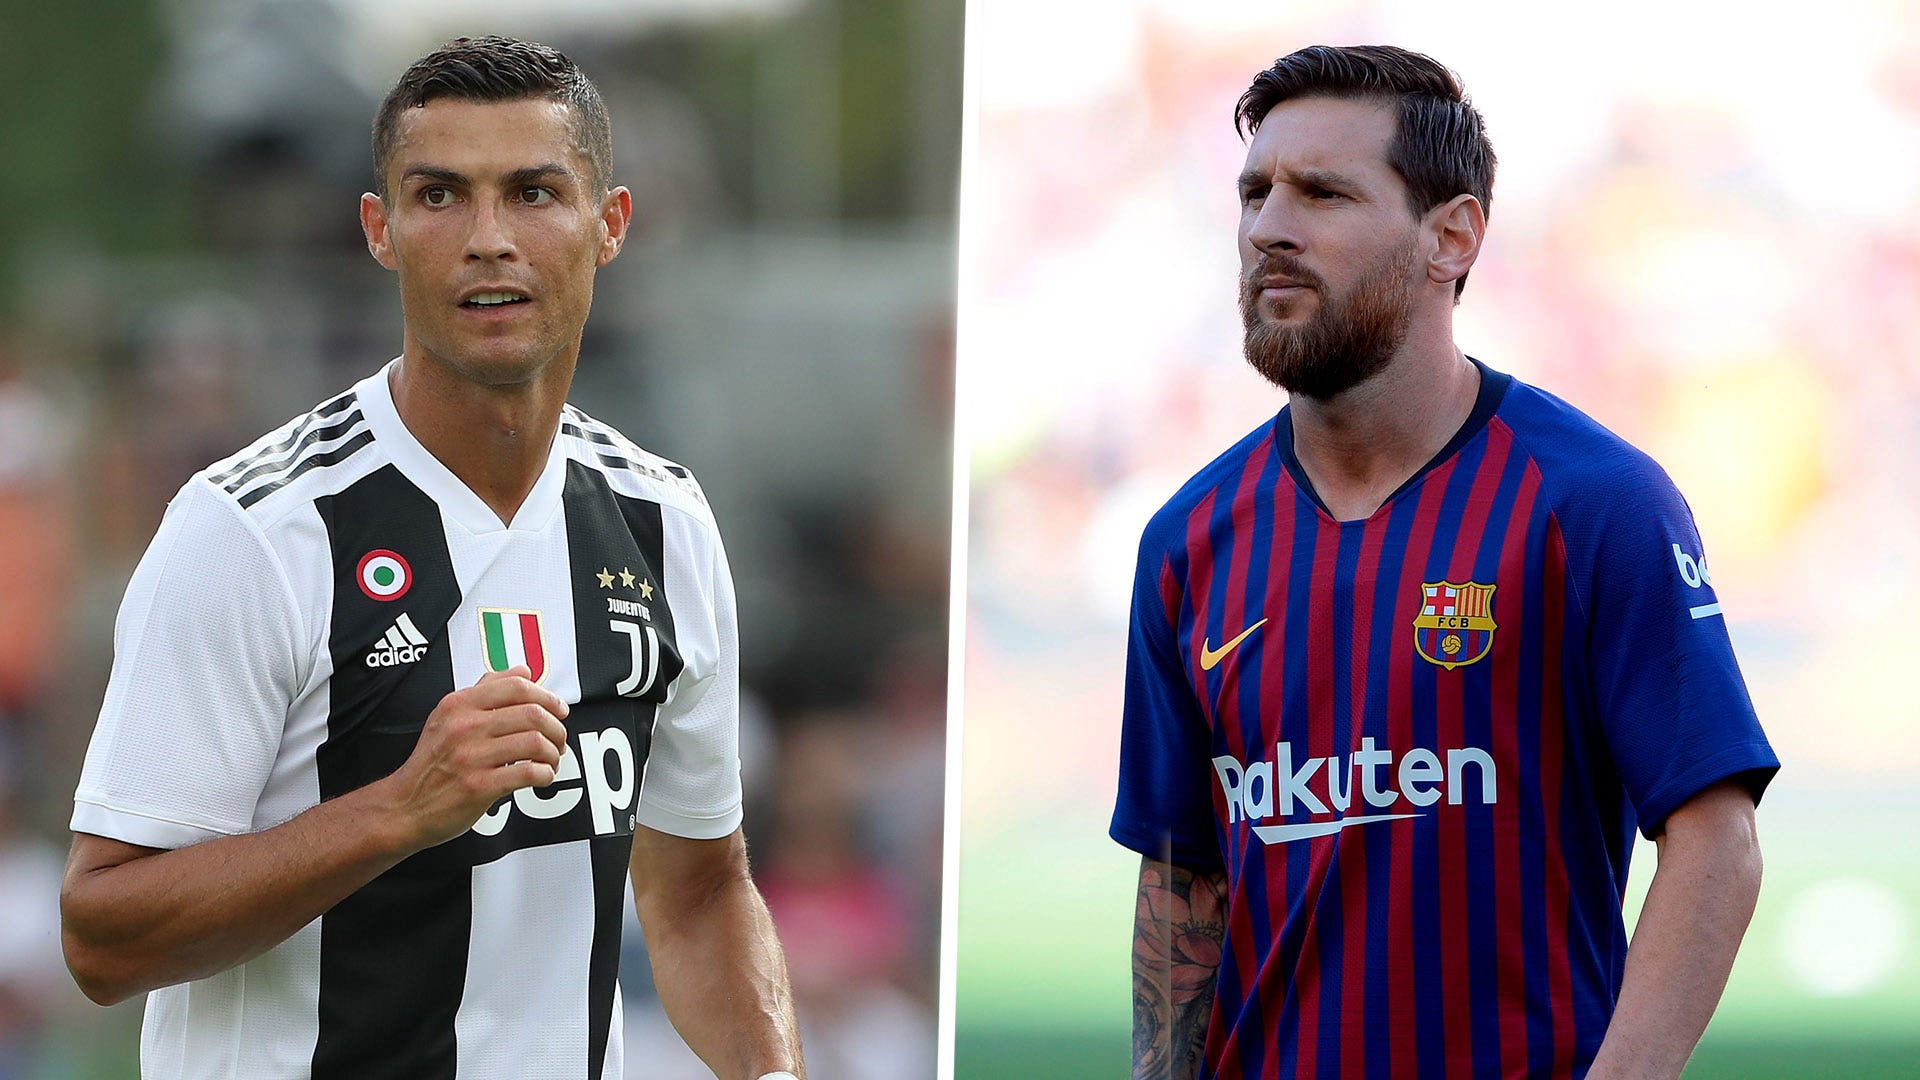 Khi nhắc đến Ronaldo và Messi, ai mới là người đẹp trai hơn? Hãy truy cập ngay để so sánh hai siêu sao này và đưa ra quyết định của riêng bạn!